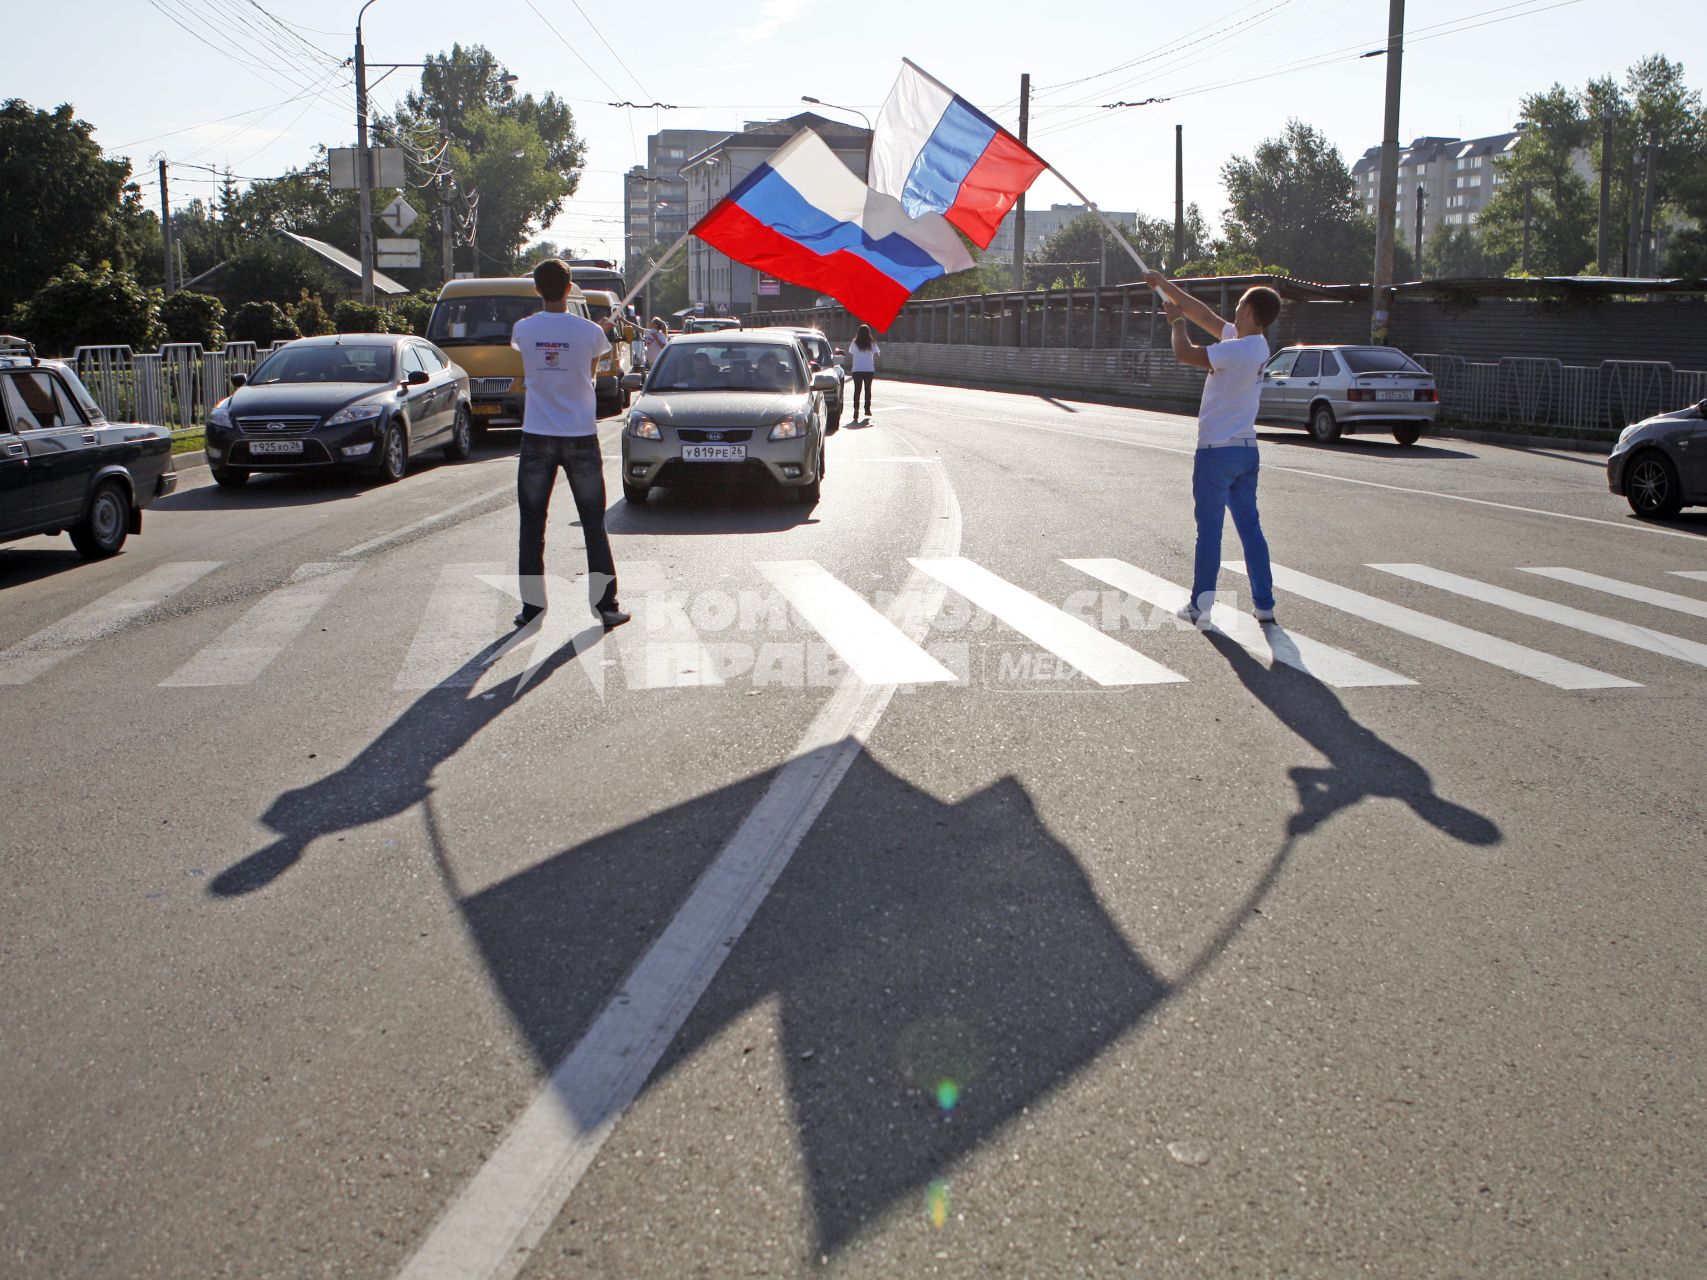 Волонтеры поздравляют автомобилистов с днем флага. На снимке: мужчины с российским флагом в руках.